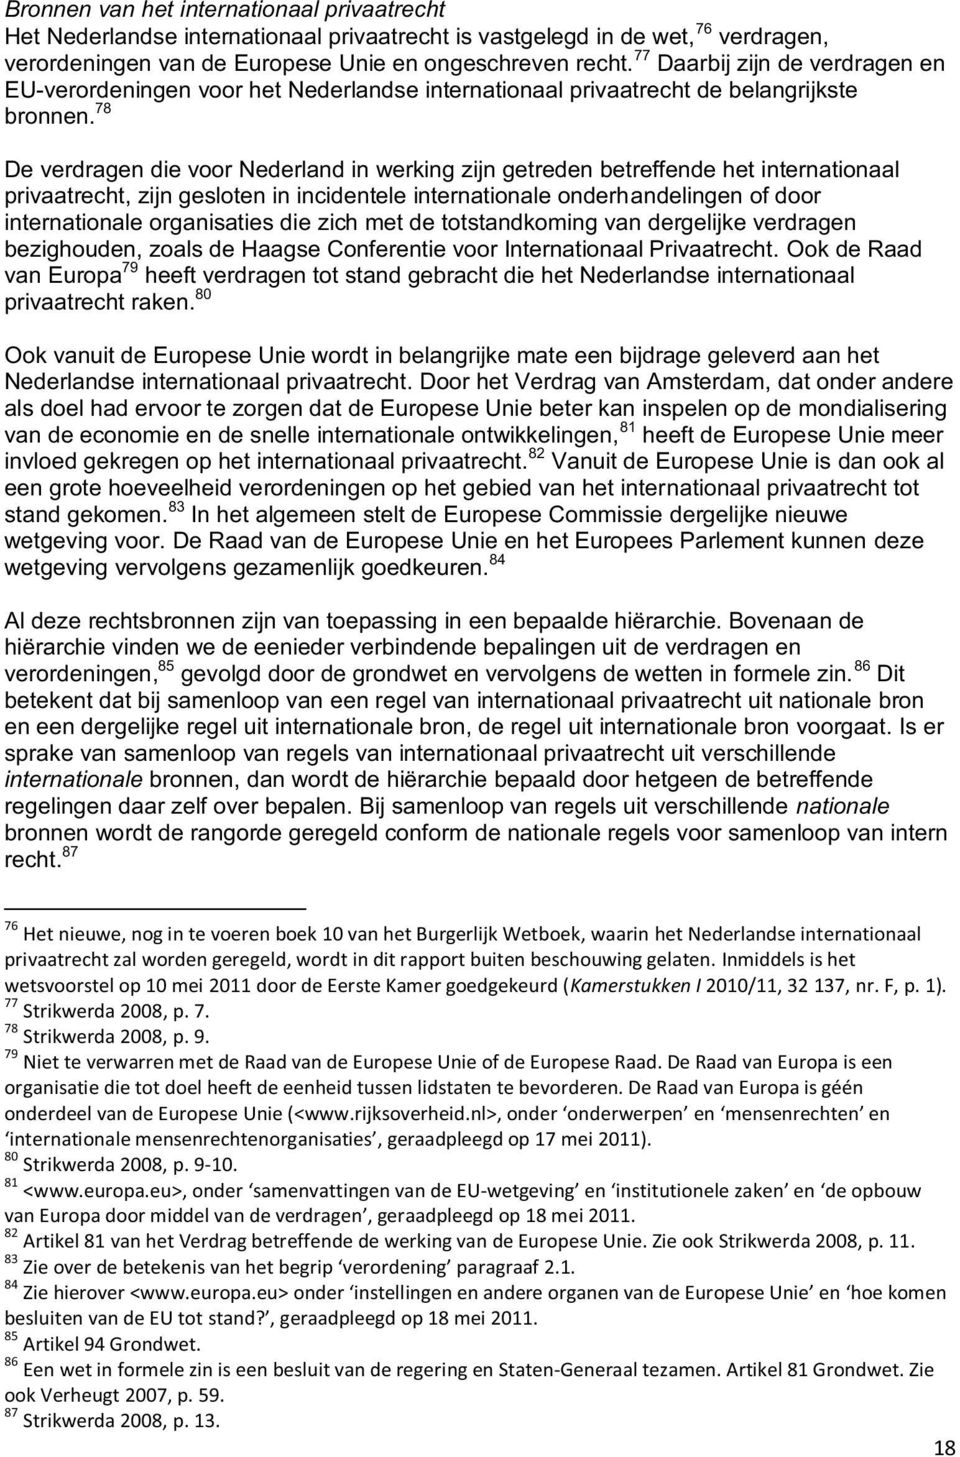 78 De verdragen die voor Nederland in werking zijn getreden betreffende het internationaal privaatrecht, zijn gesloten in incidentele internationale onderhandelingen of door internationale